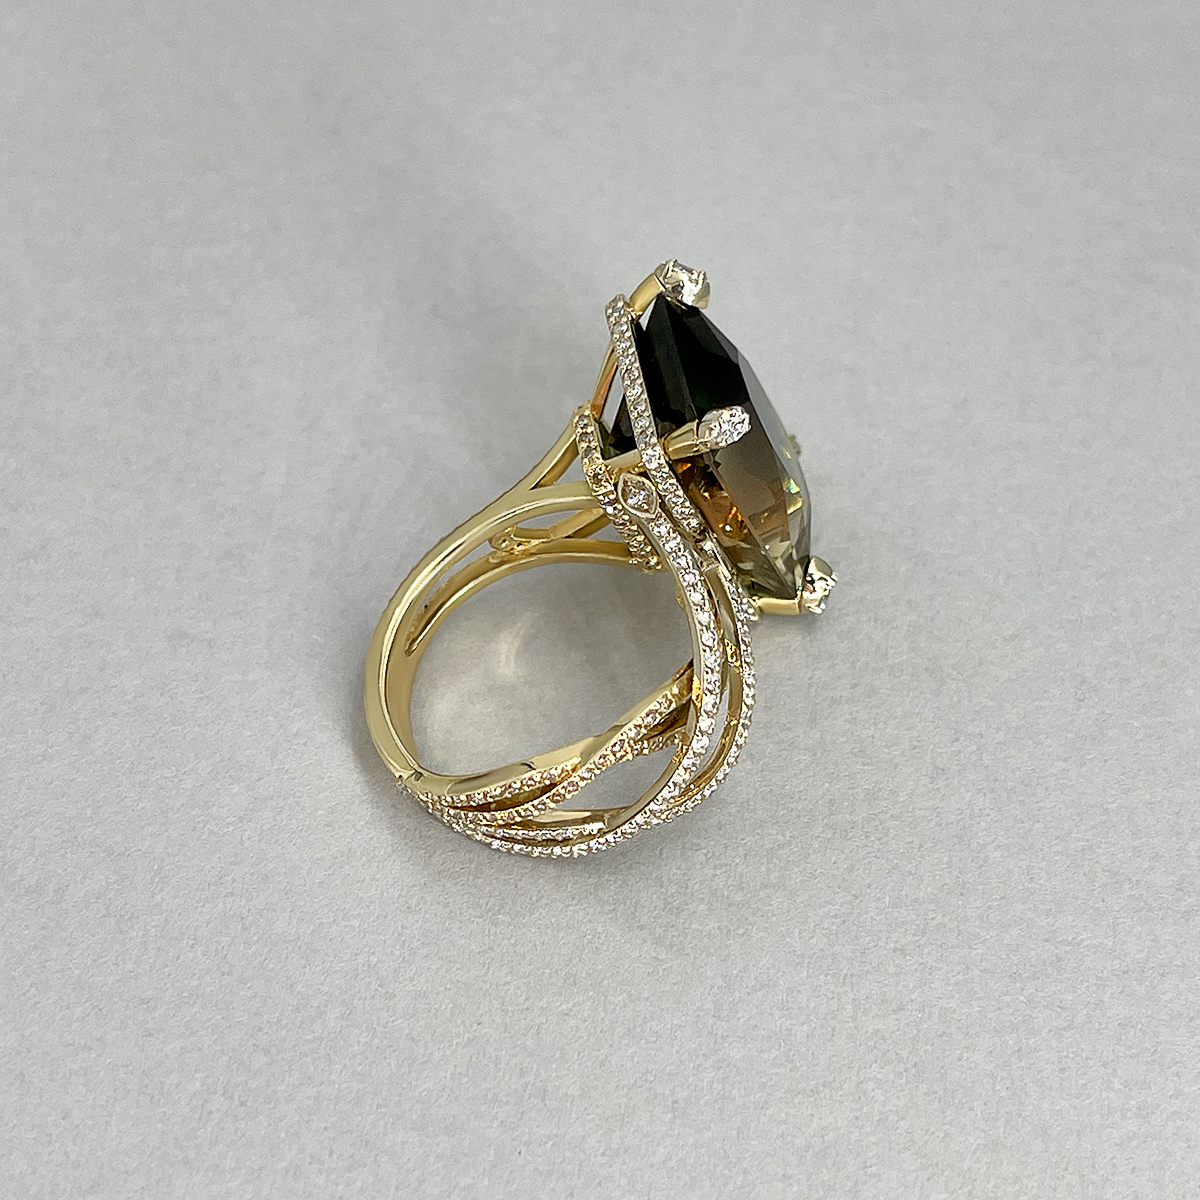 Авторское кольцо с орегонским солнечным камнем и бриллиантами из желтого золота 585 пробы, фото № 3